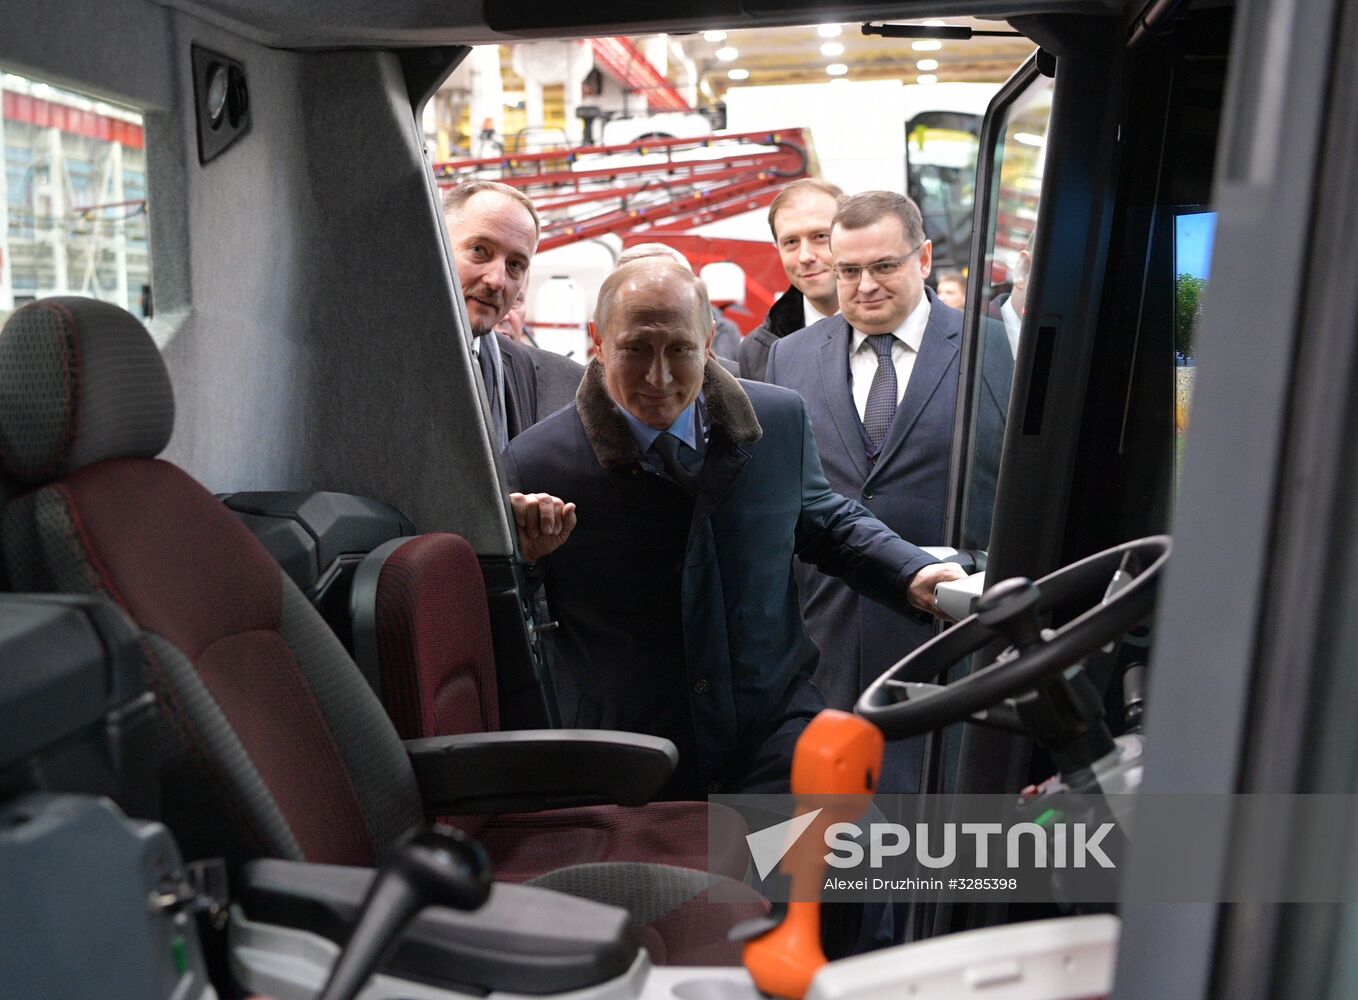 President Putin's working trip to Rostov-on-Don